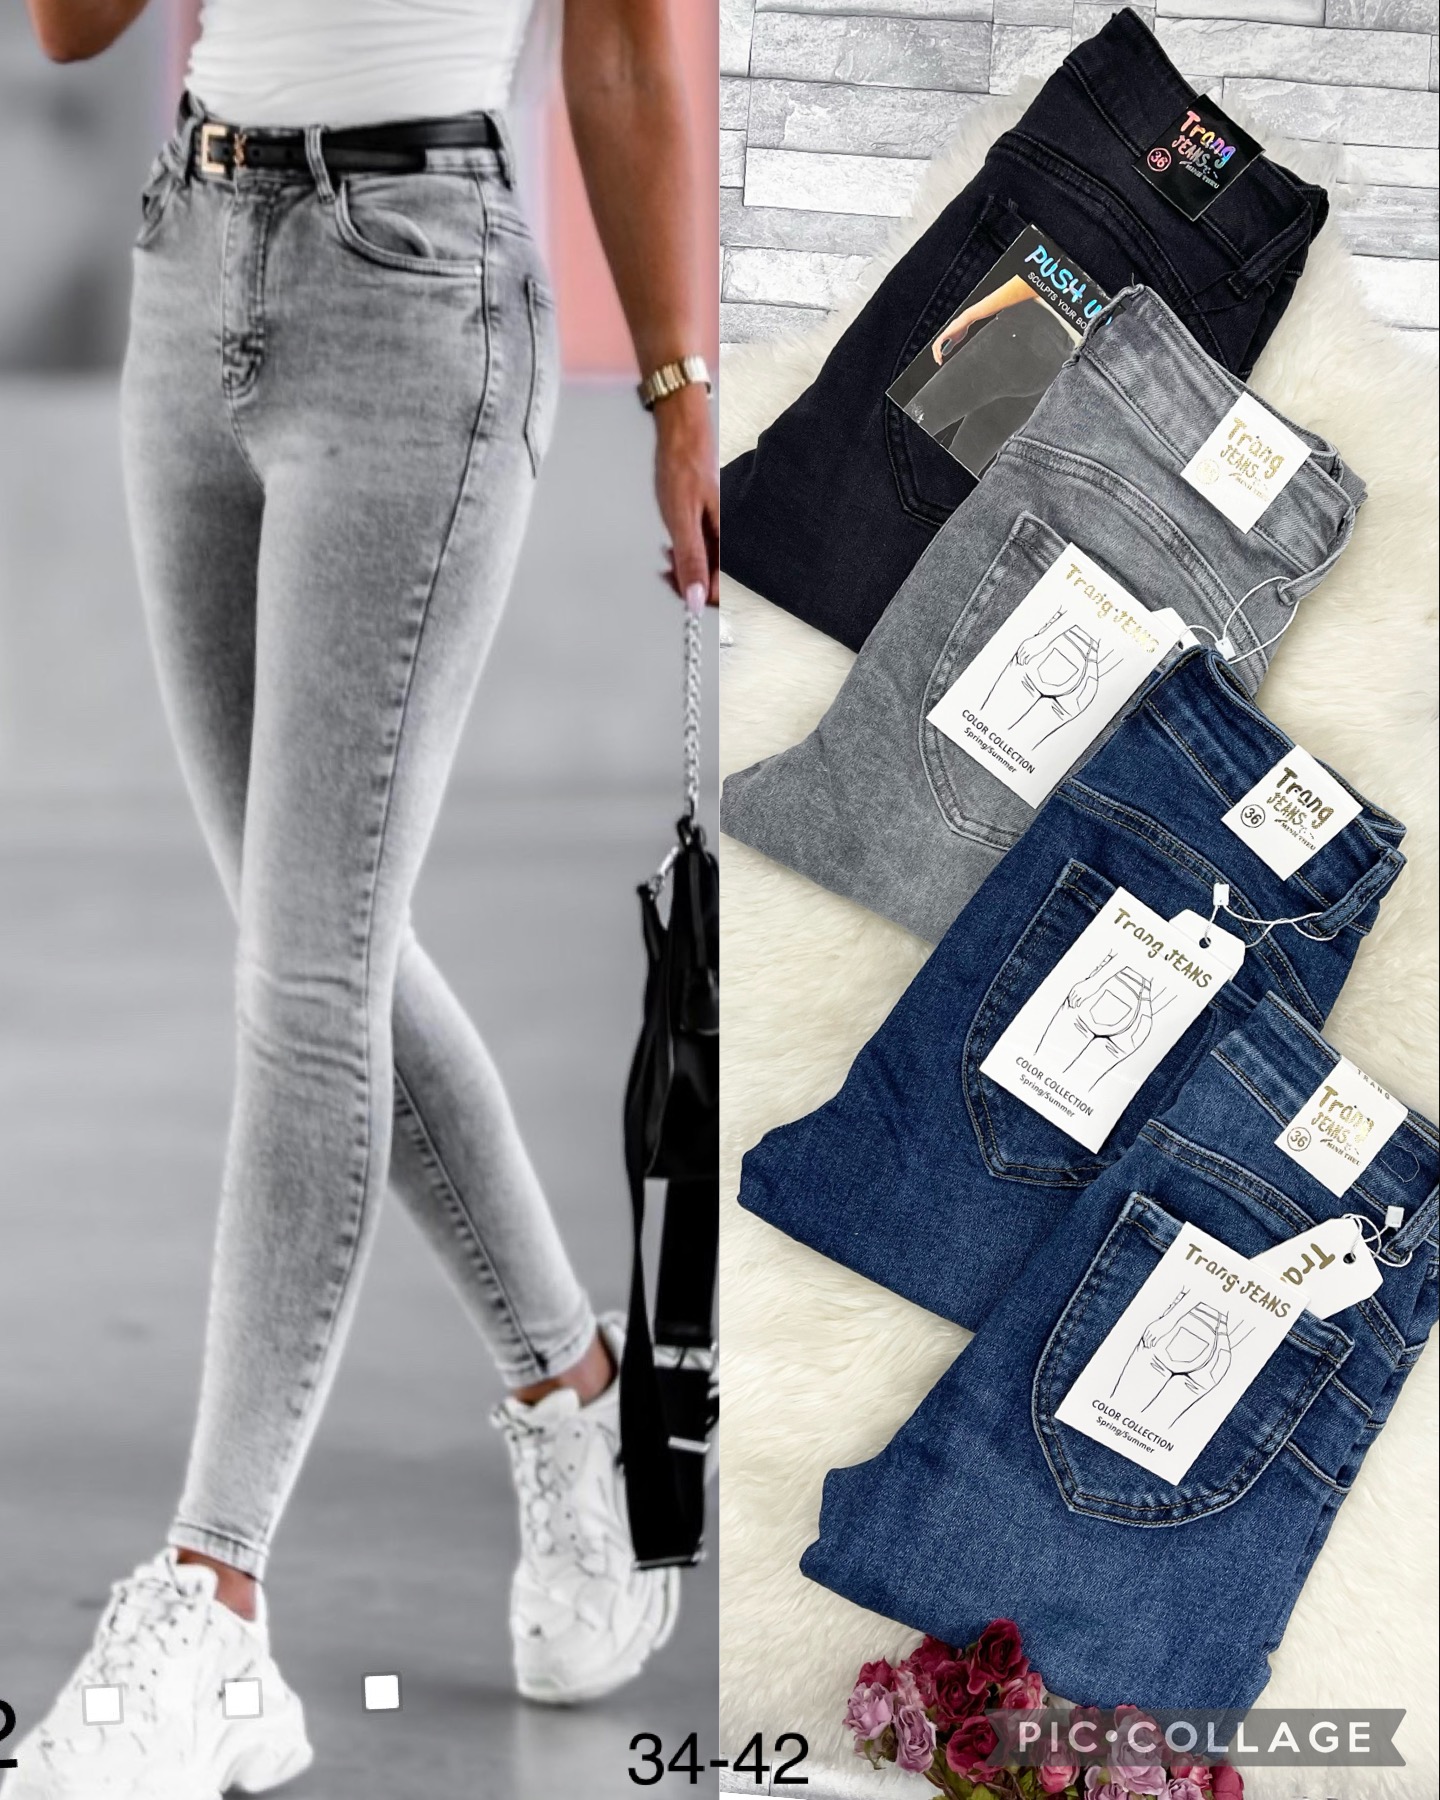 Spodnie damskie jeans.Roz 34-42  Paczka 10szt